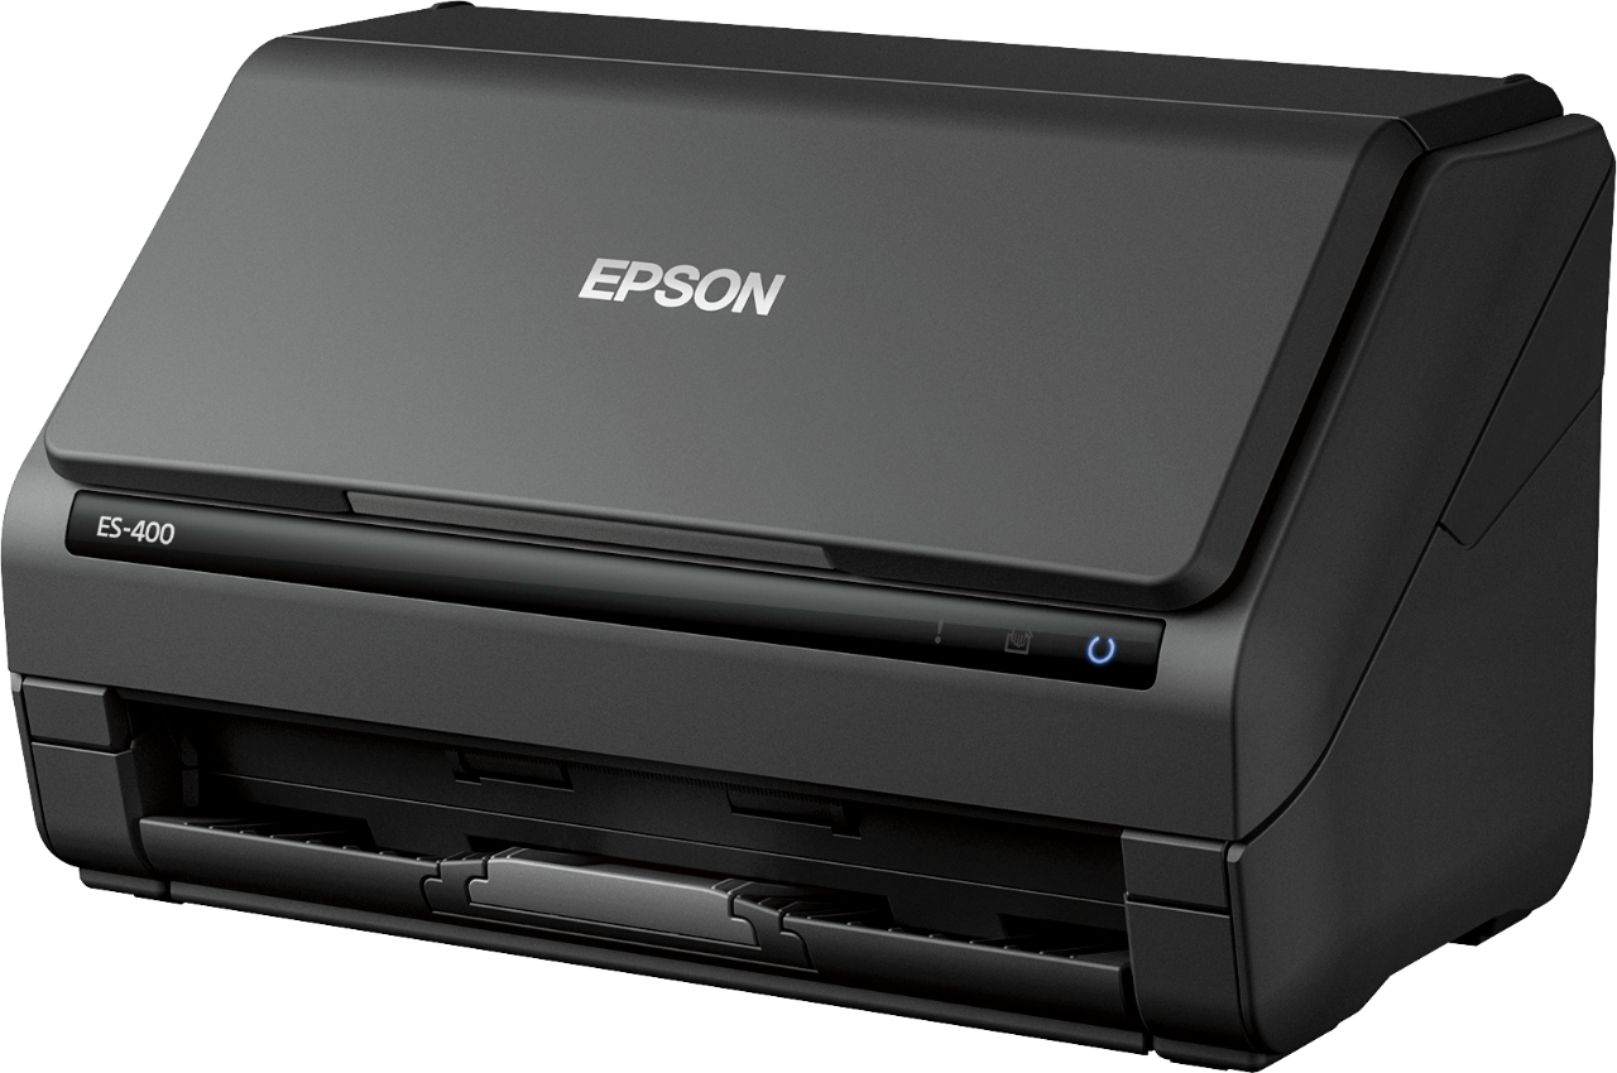  Epson  Workforce ES 400  Document Scanner Black Okinus 